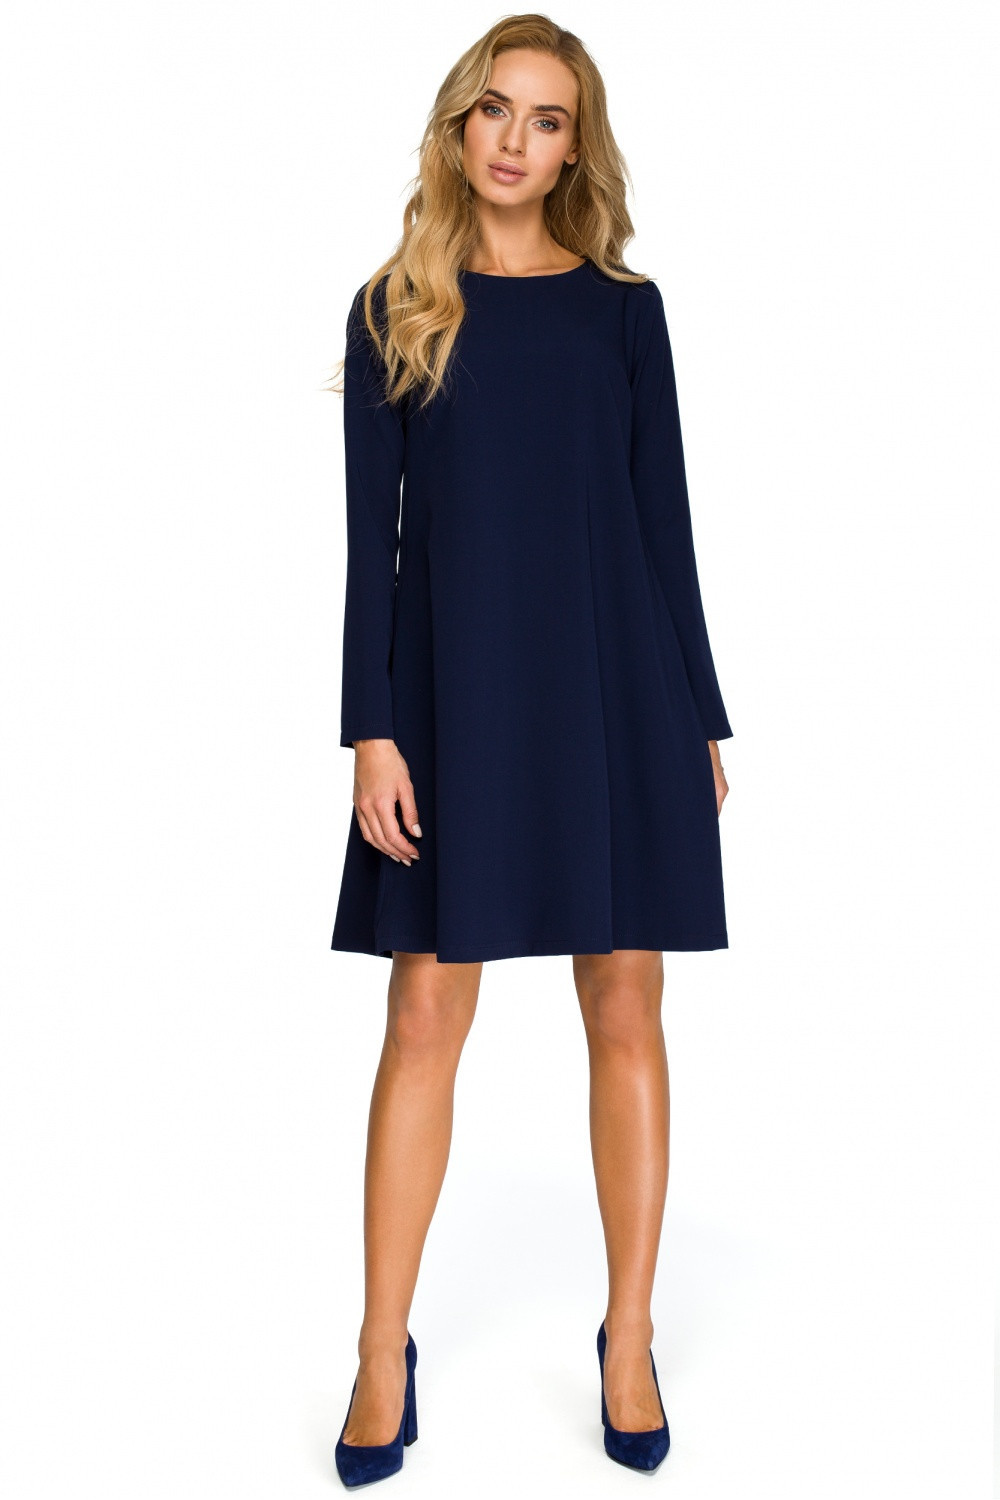 Společenské šaty model Style M tmavě modrá model 14564587 - STYLOVE